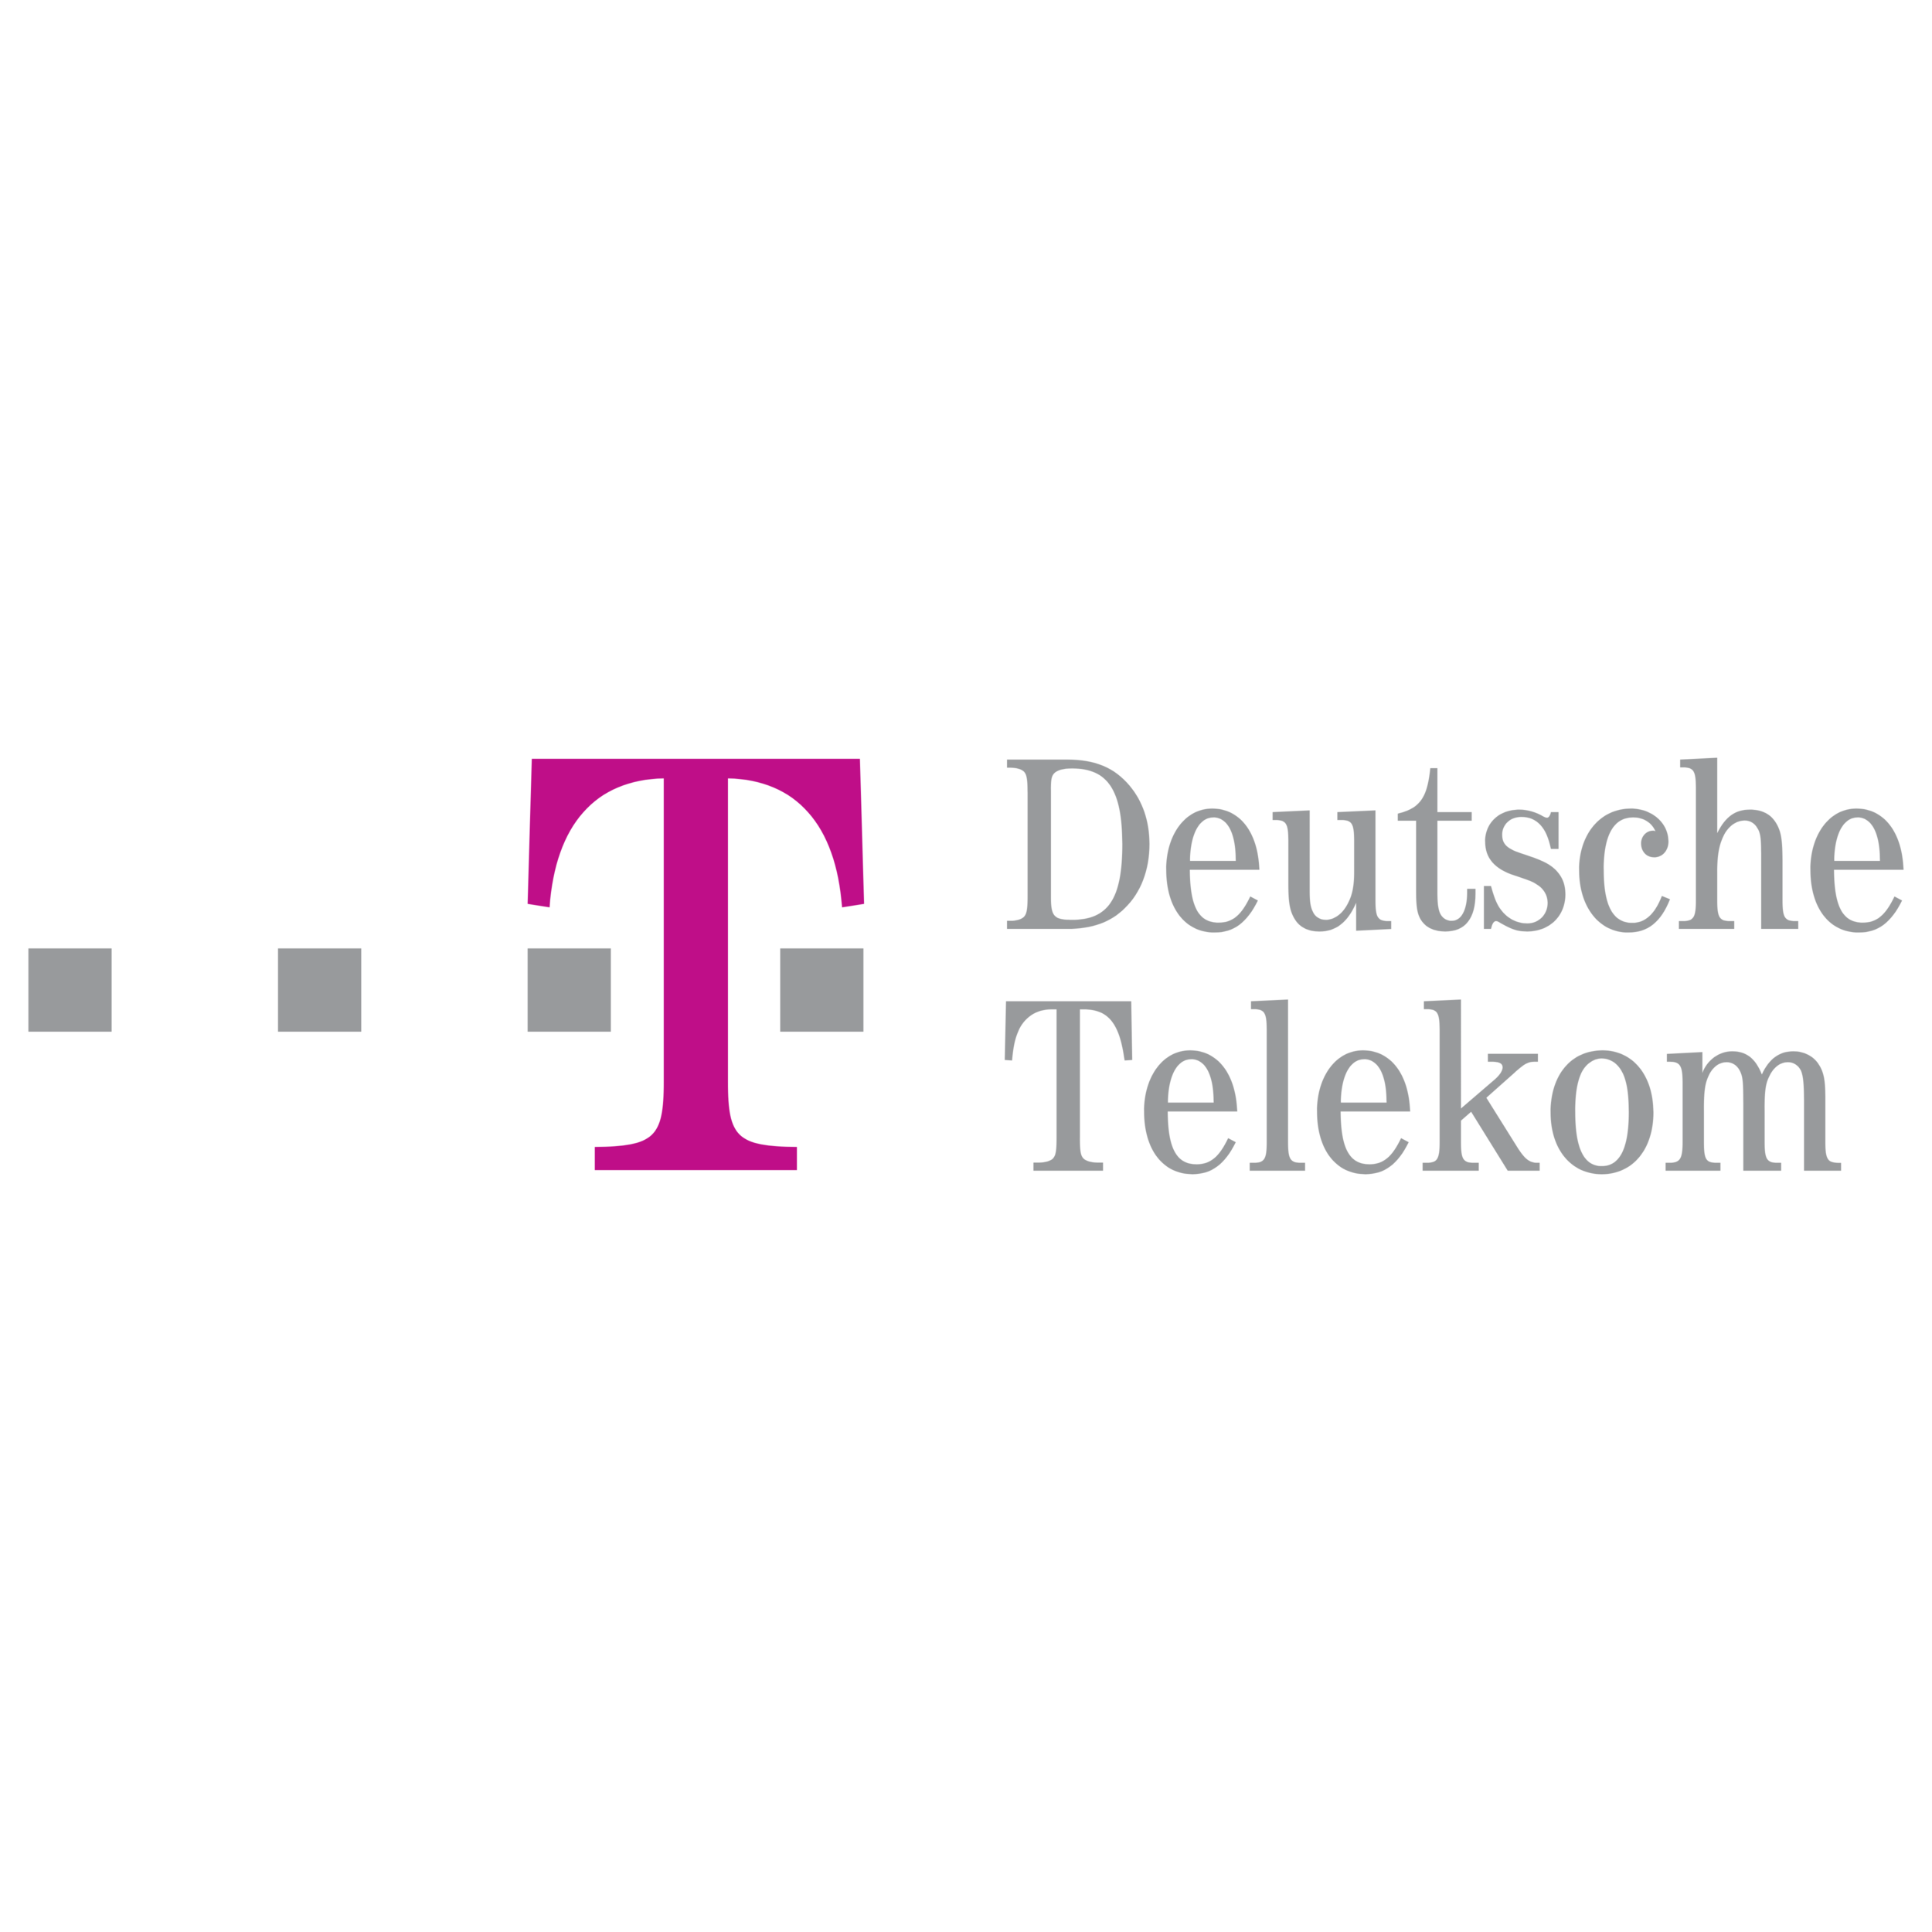 Deutsche_Telekom_logo.png